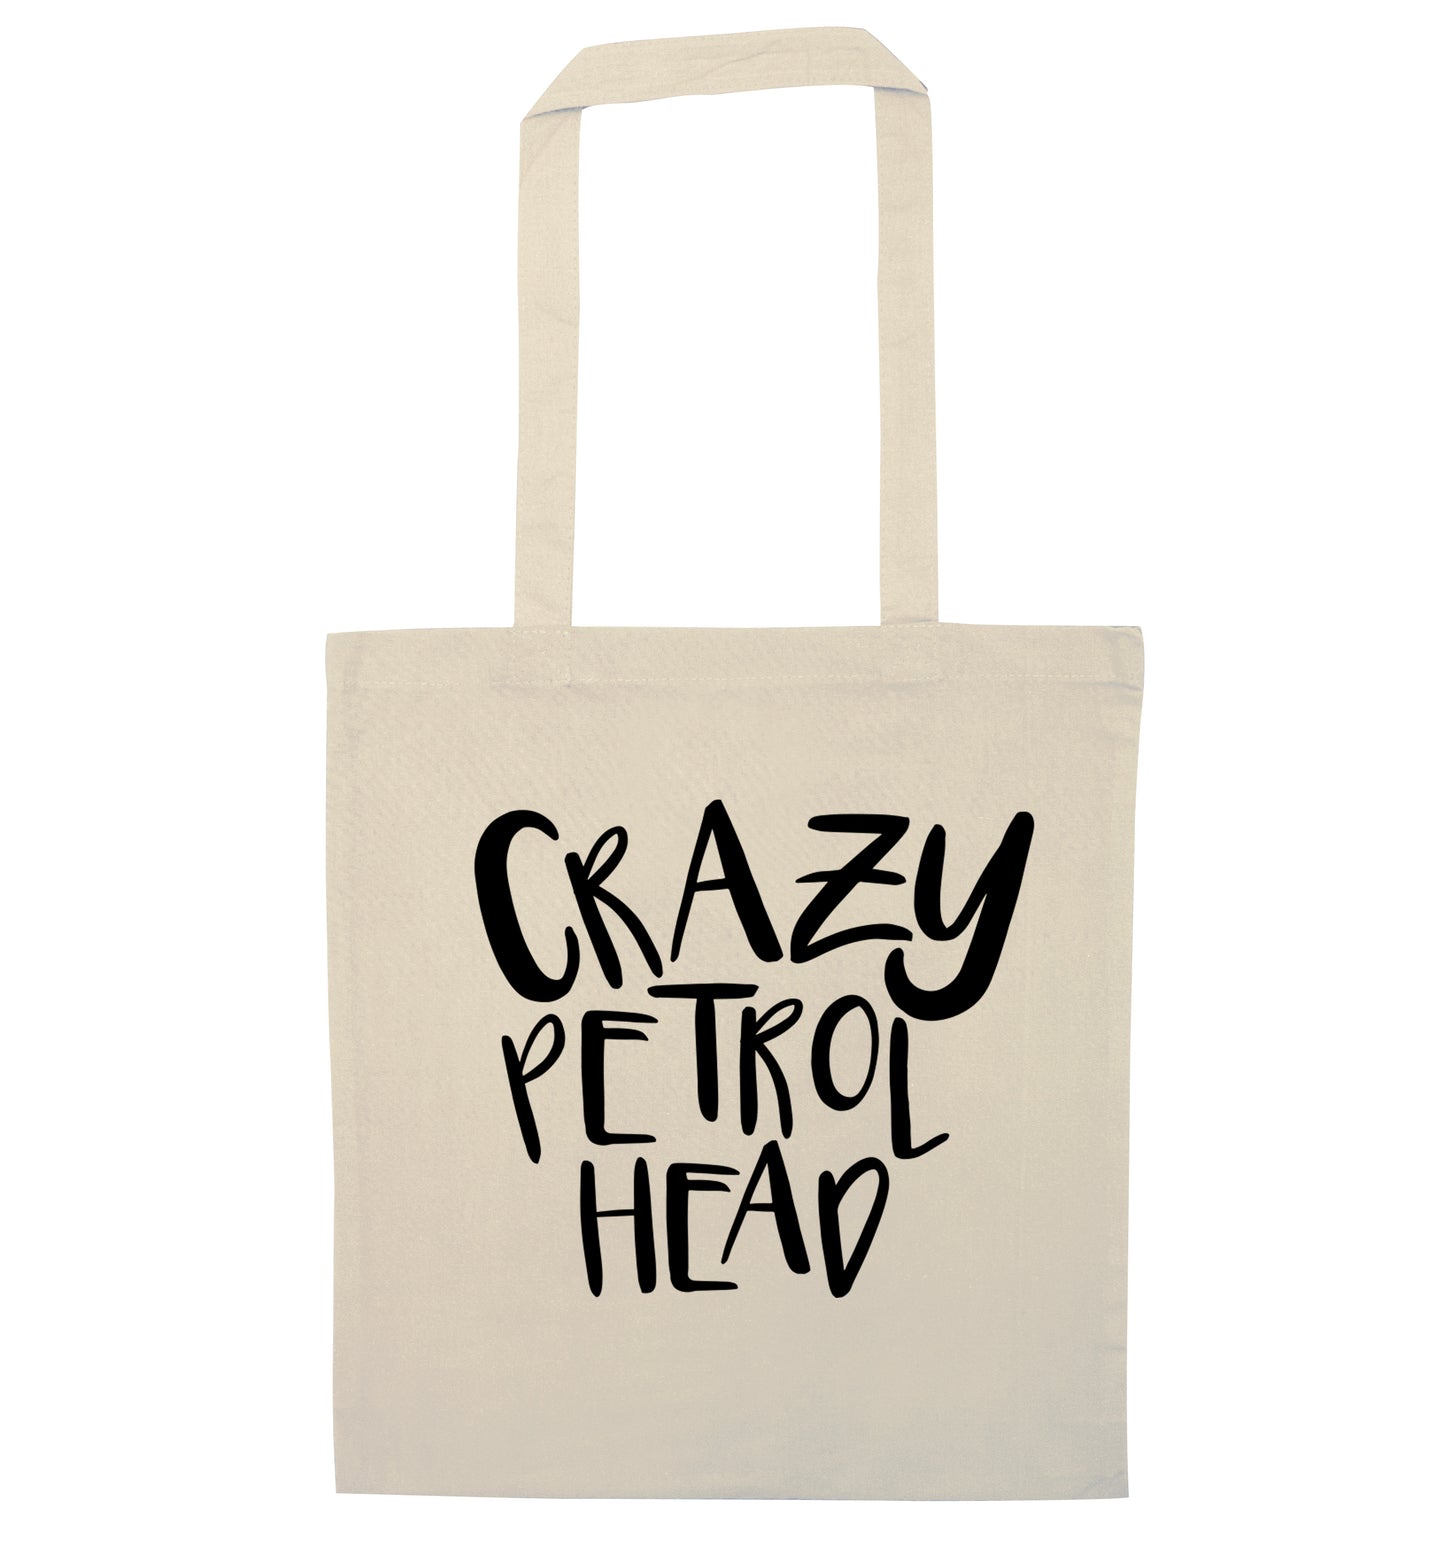 Crazy petrol head natural tote bag